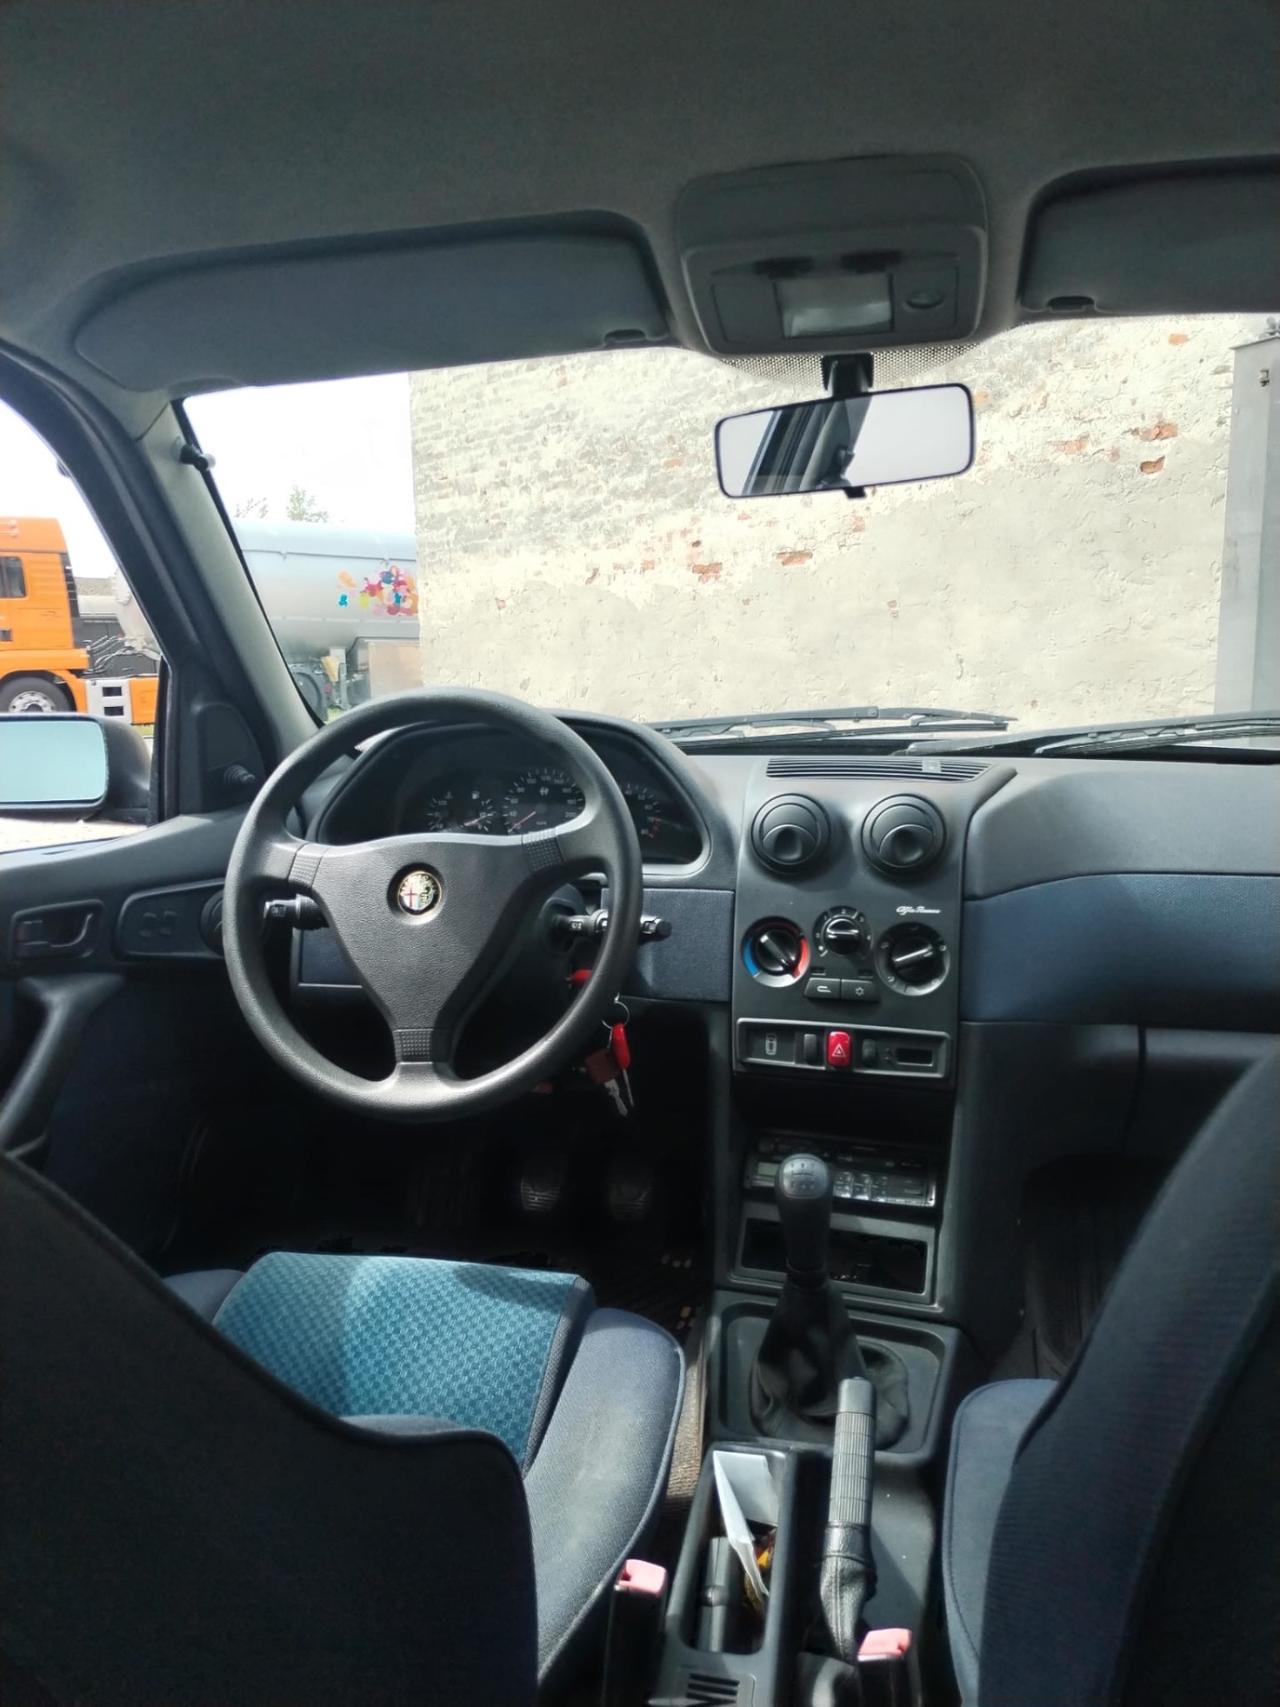 Alfa Romeo 146 1.4i 16V Twin Spark cat